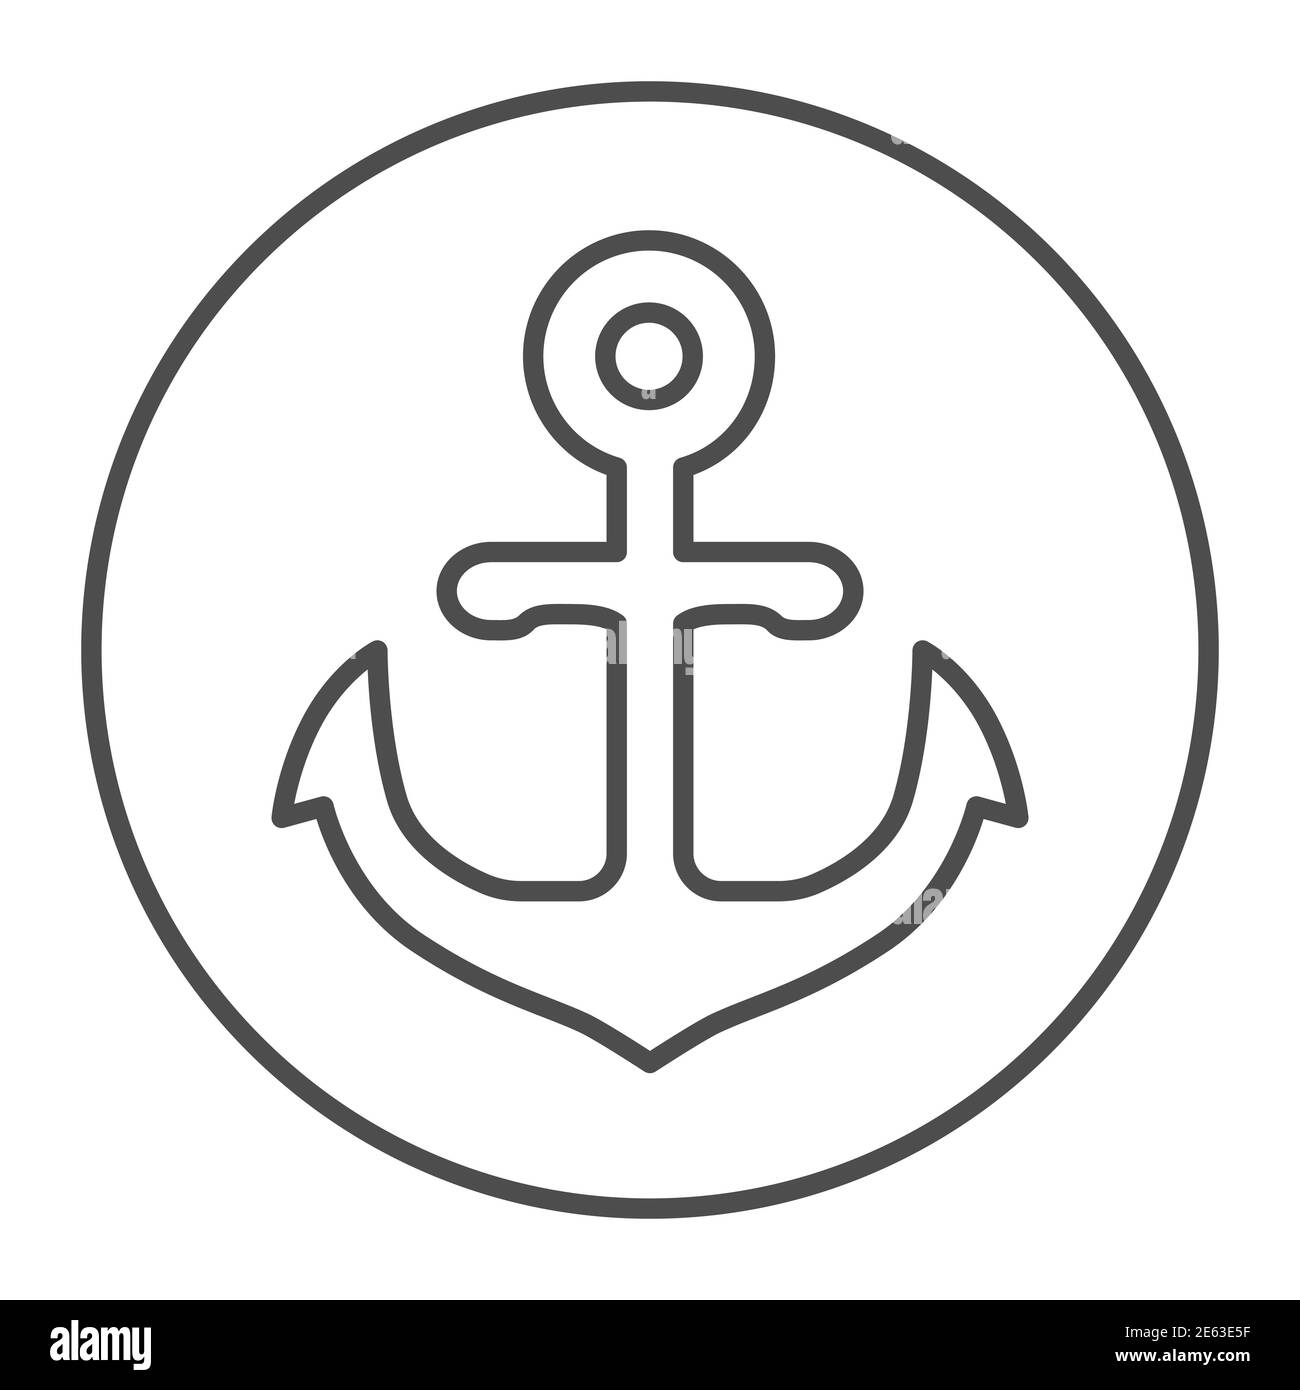 Símbolo de ancla en forma redonda icono de línea fina, concepto marino, signo de ancla sobre fondo blanco, icono de emblema náutico en estilo de contorno para el concepto móvil Ilustración del Vector